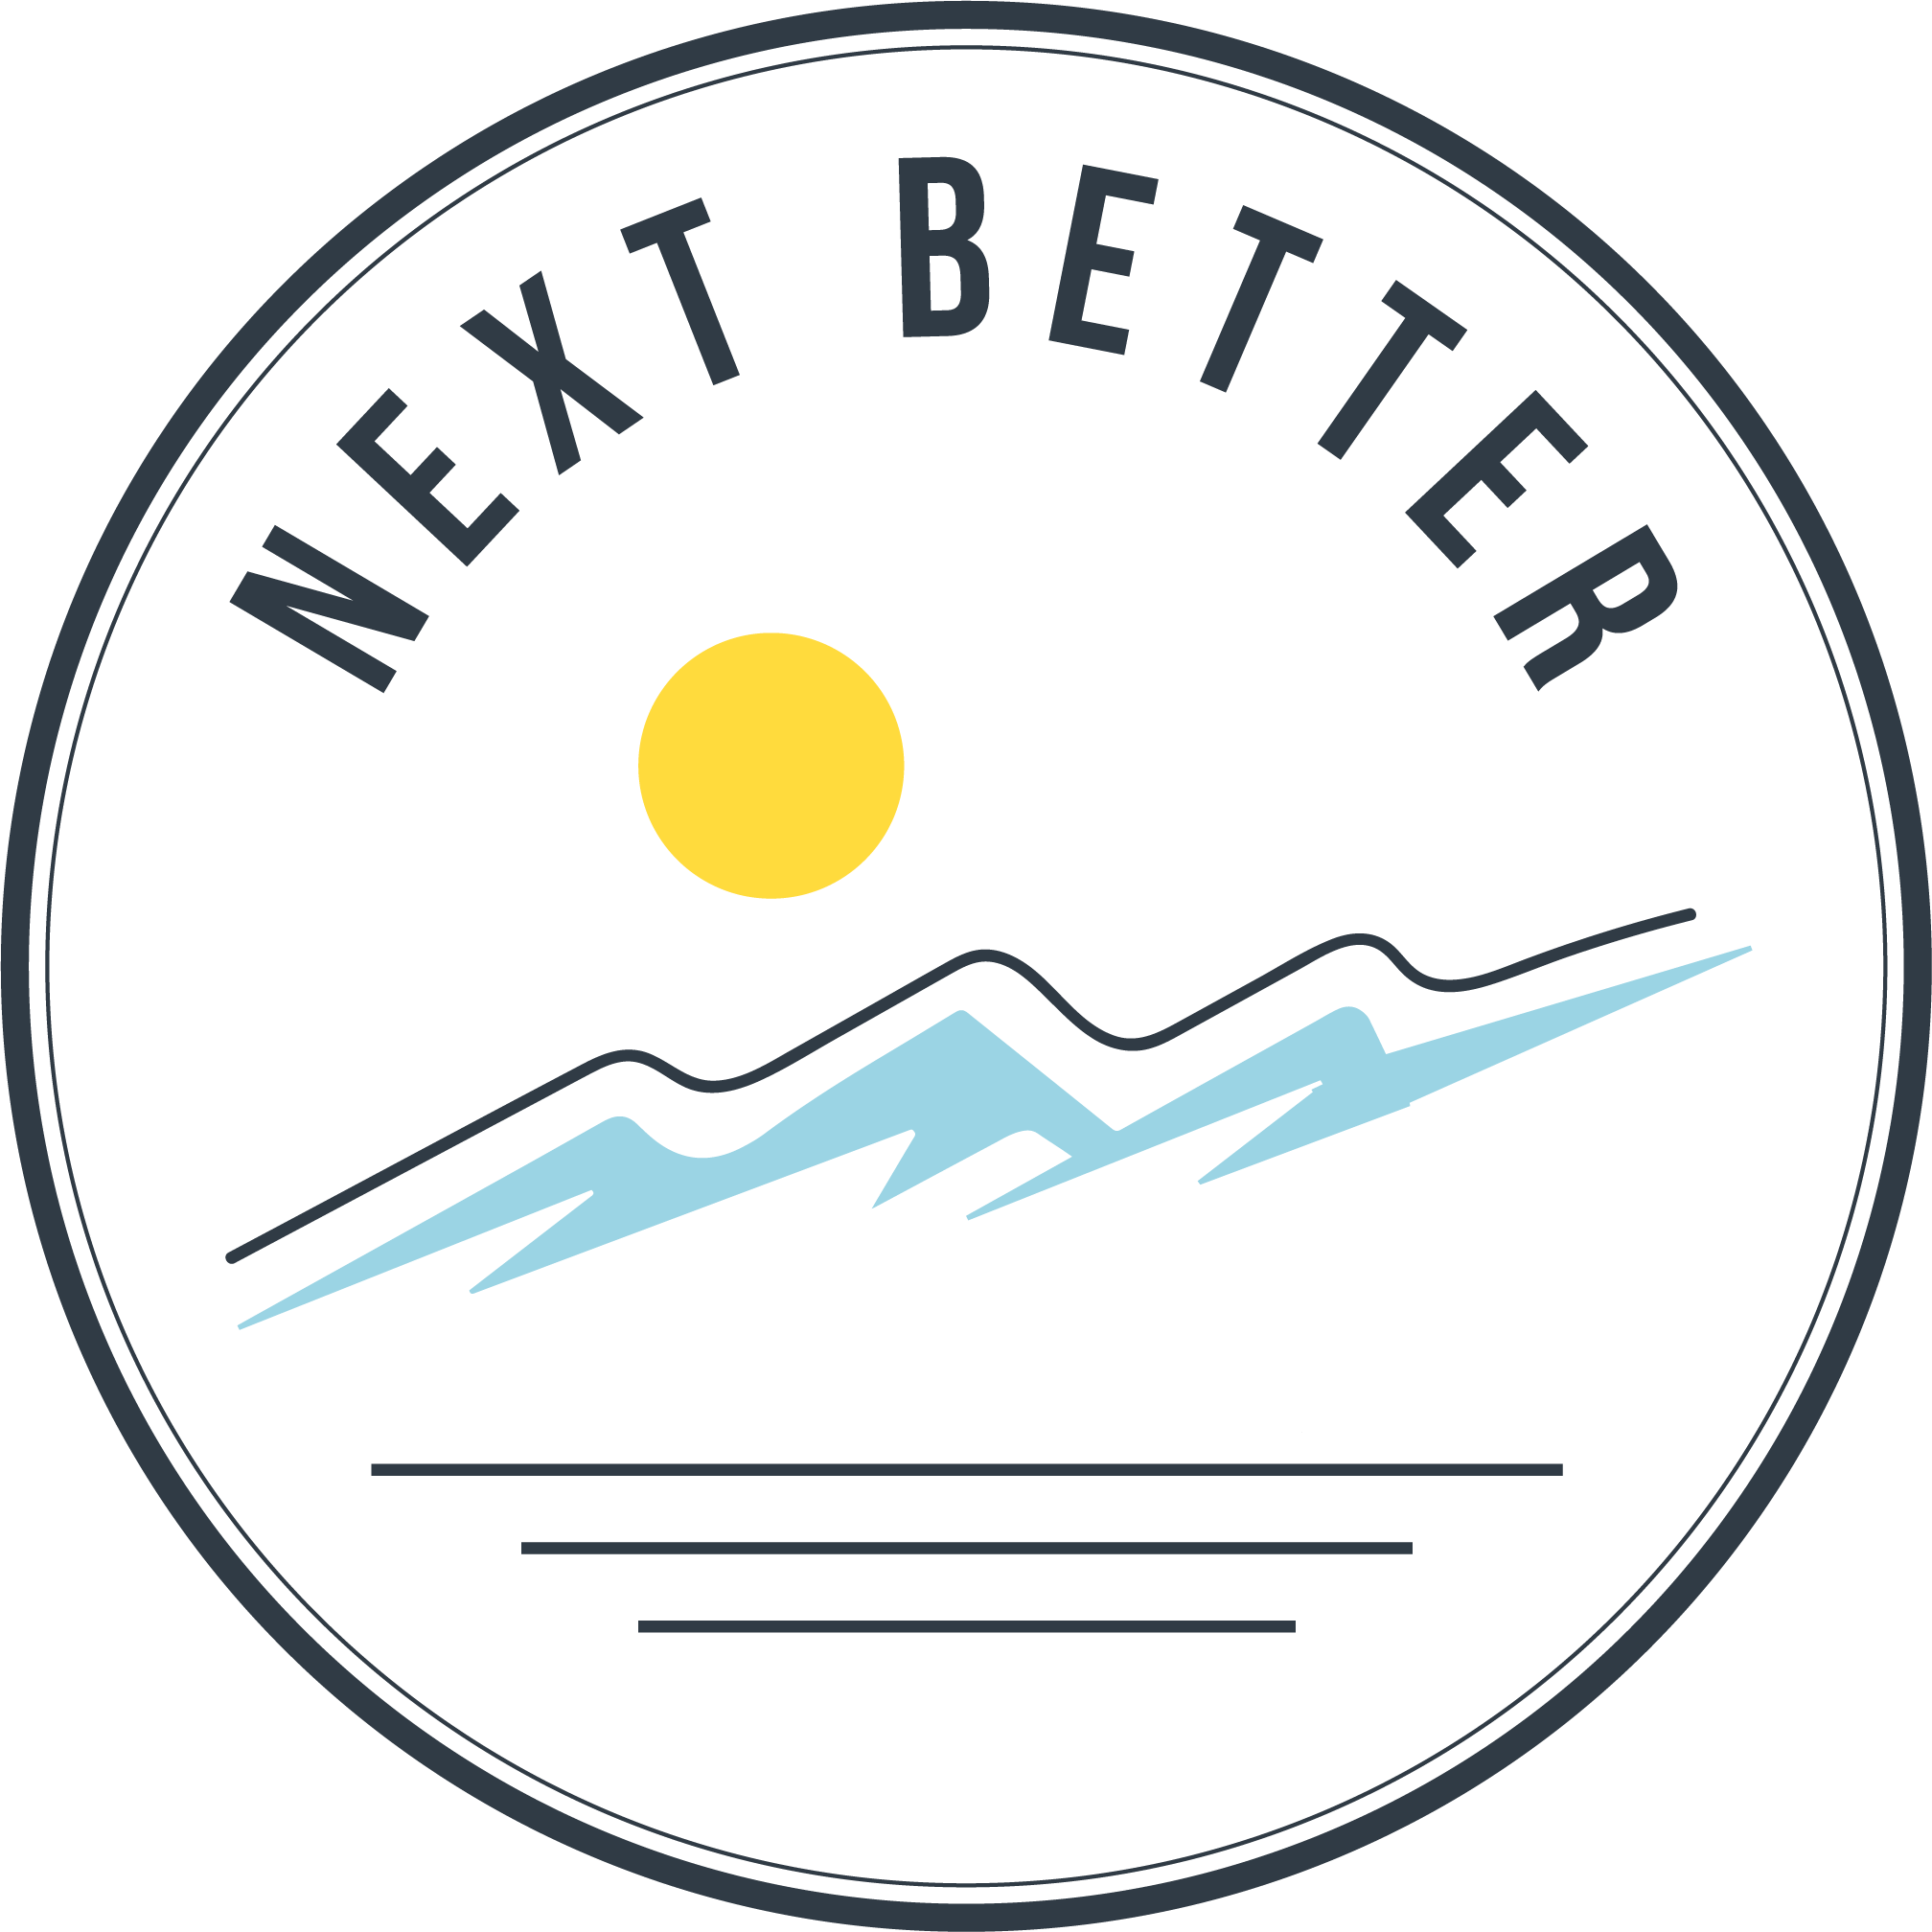 Next Better - Logo.png